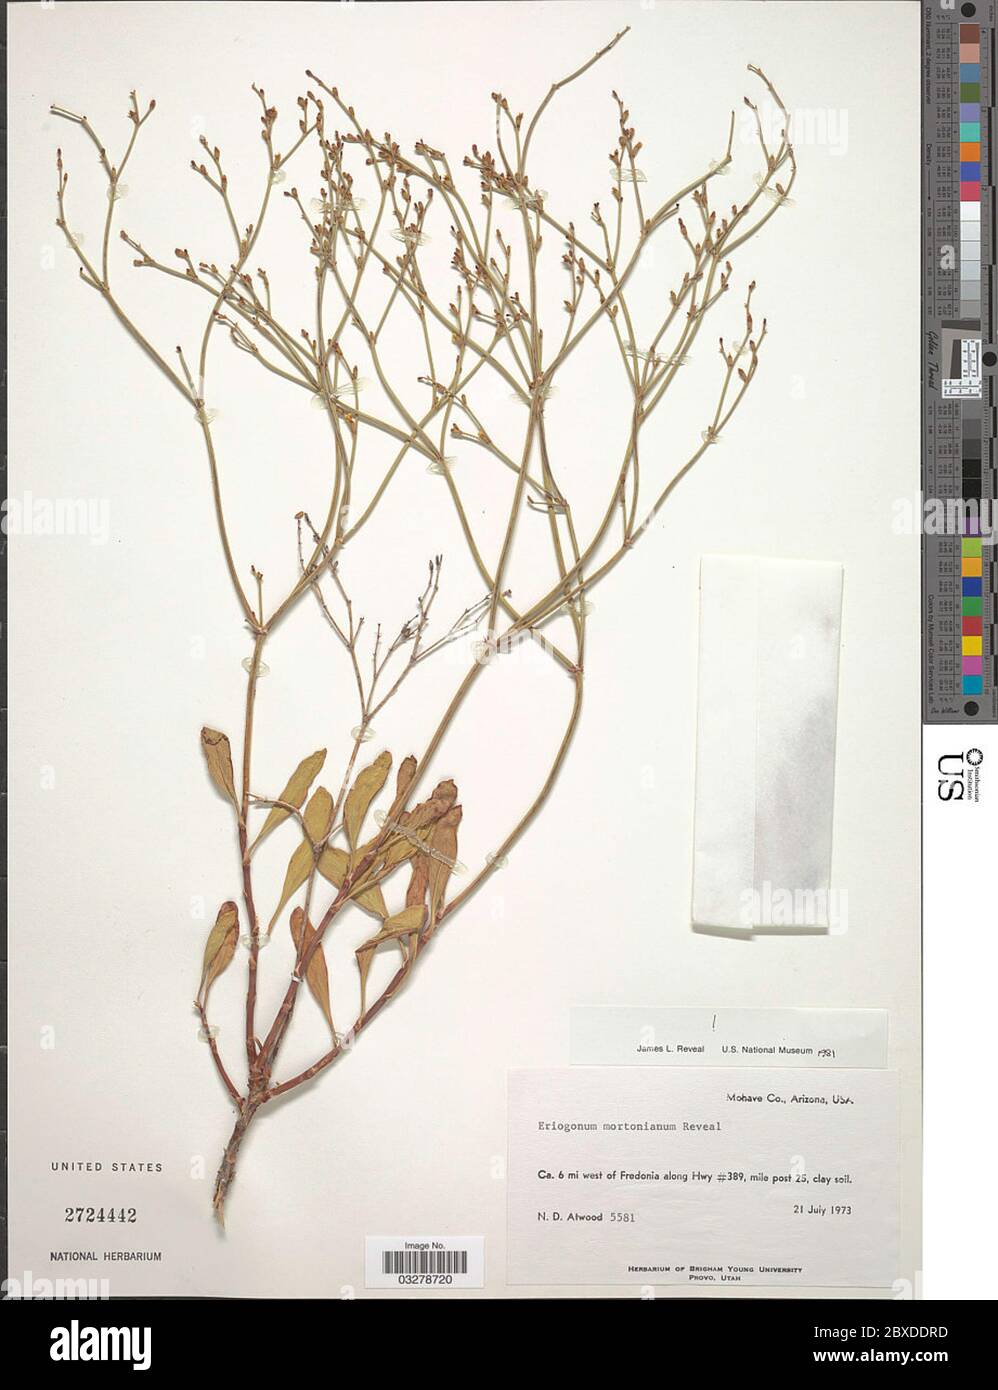 Eriogonum mortonianum Reveal Eriogonum mortonianum Reveal. Stock Photo